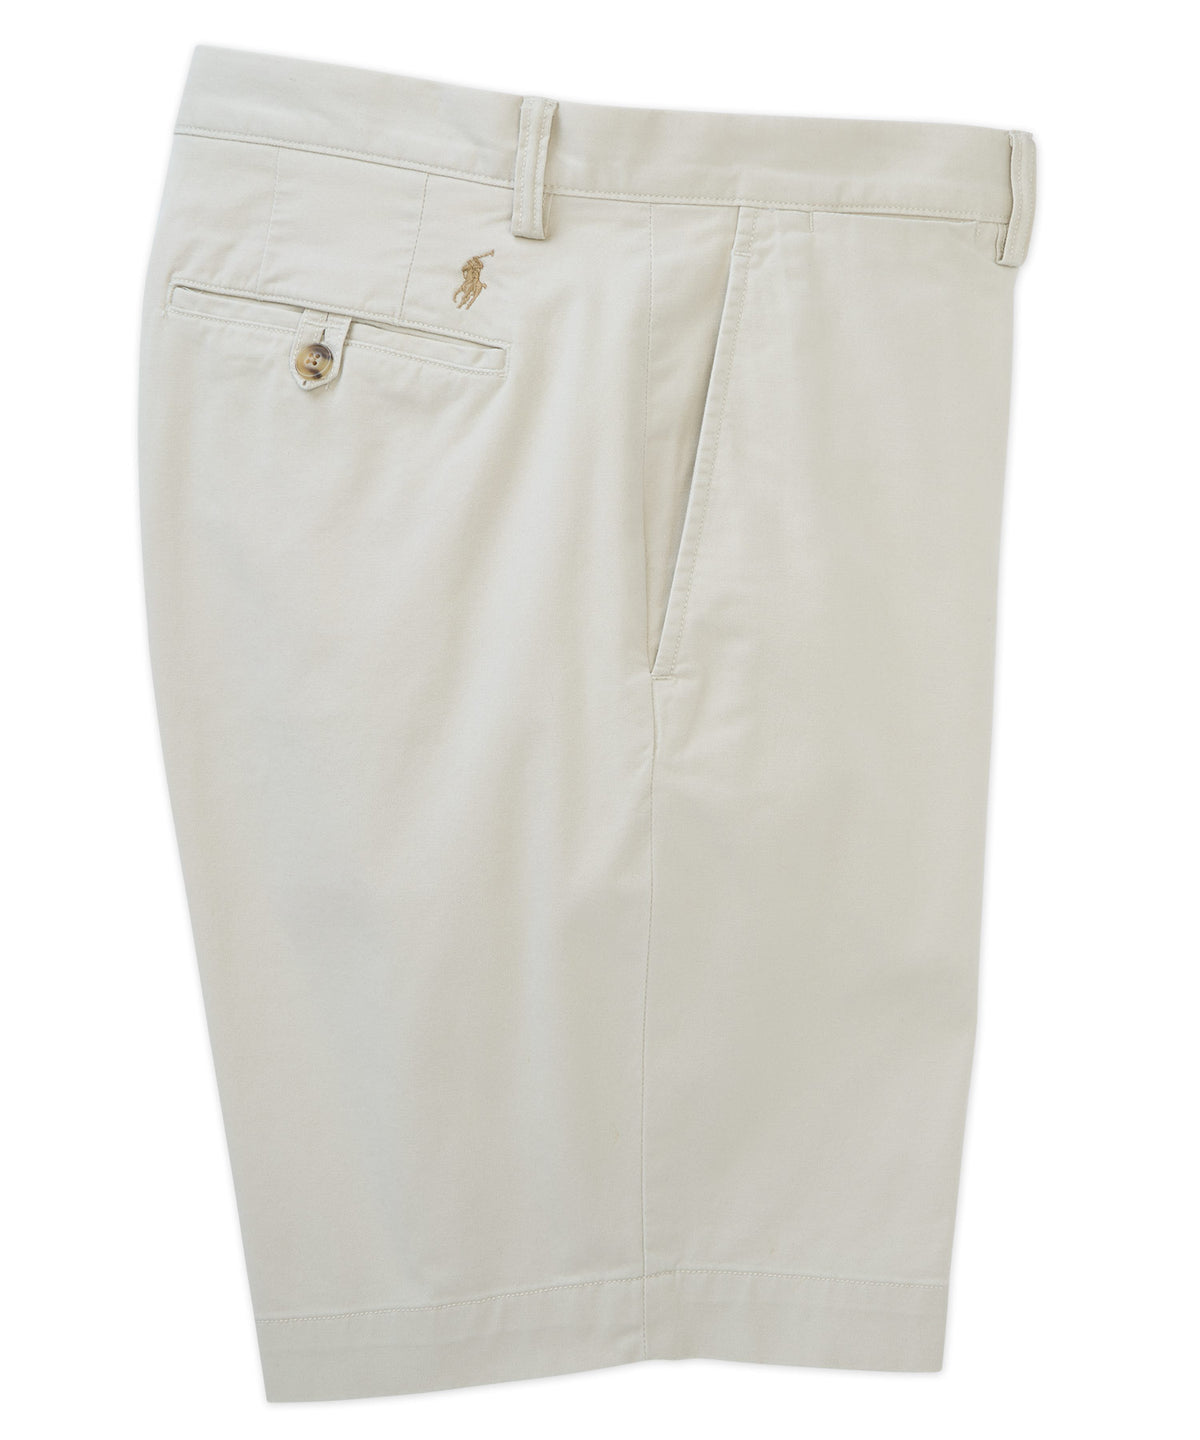 Pantaloncini chino piatti elasticizzati sul davanti Polo Ralph Lauren, Big & Tall